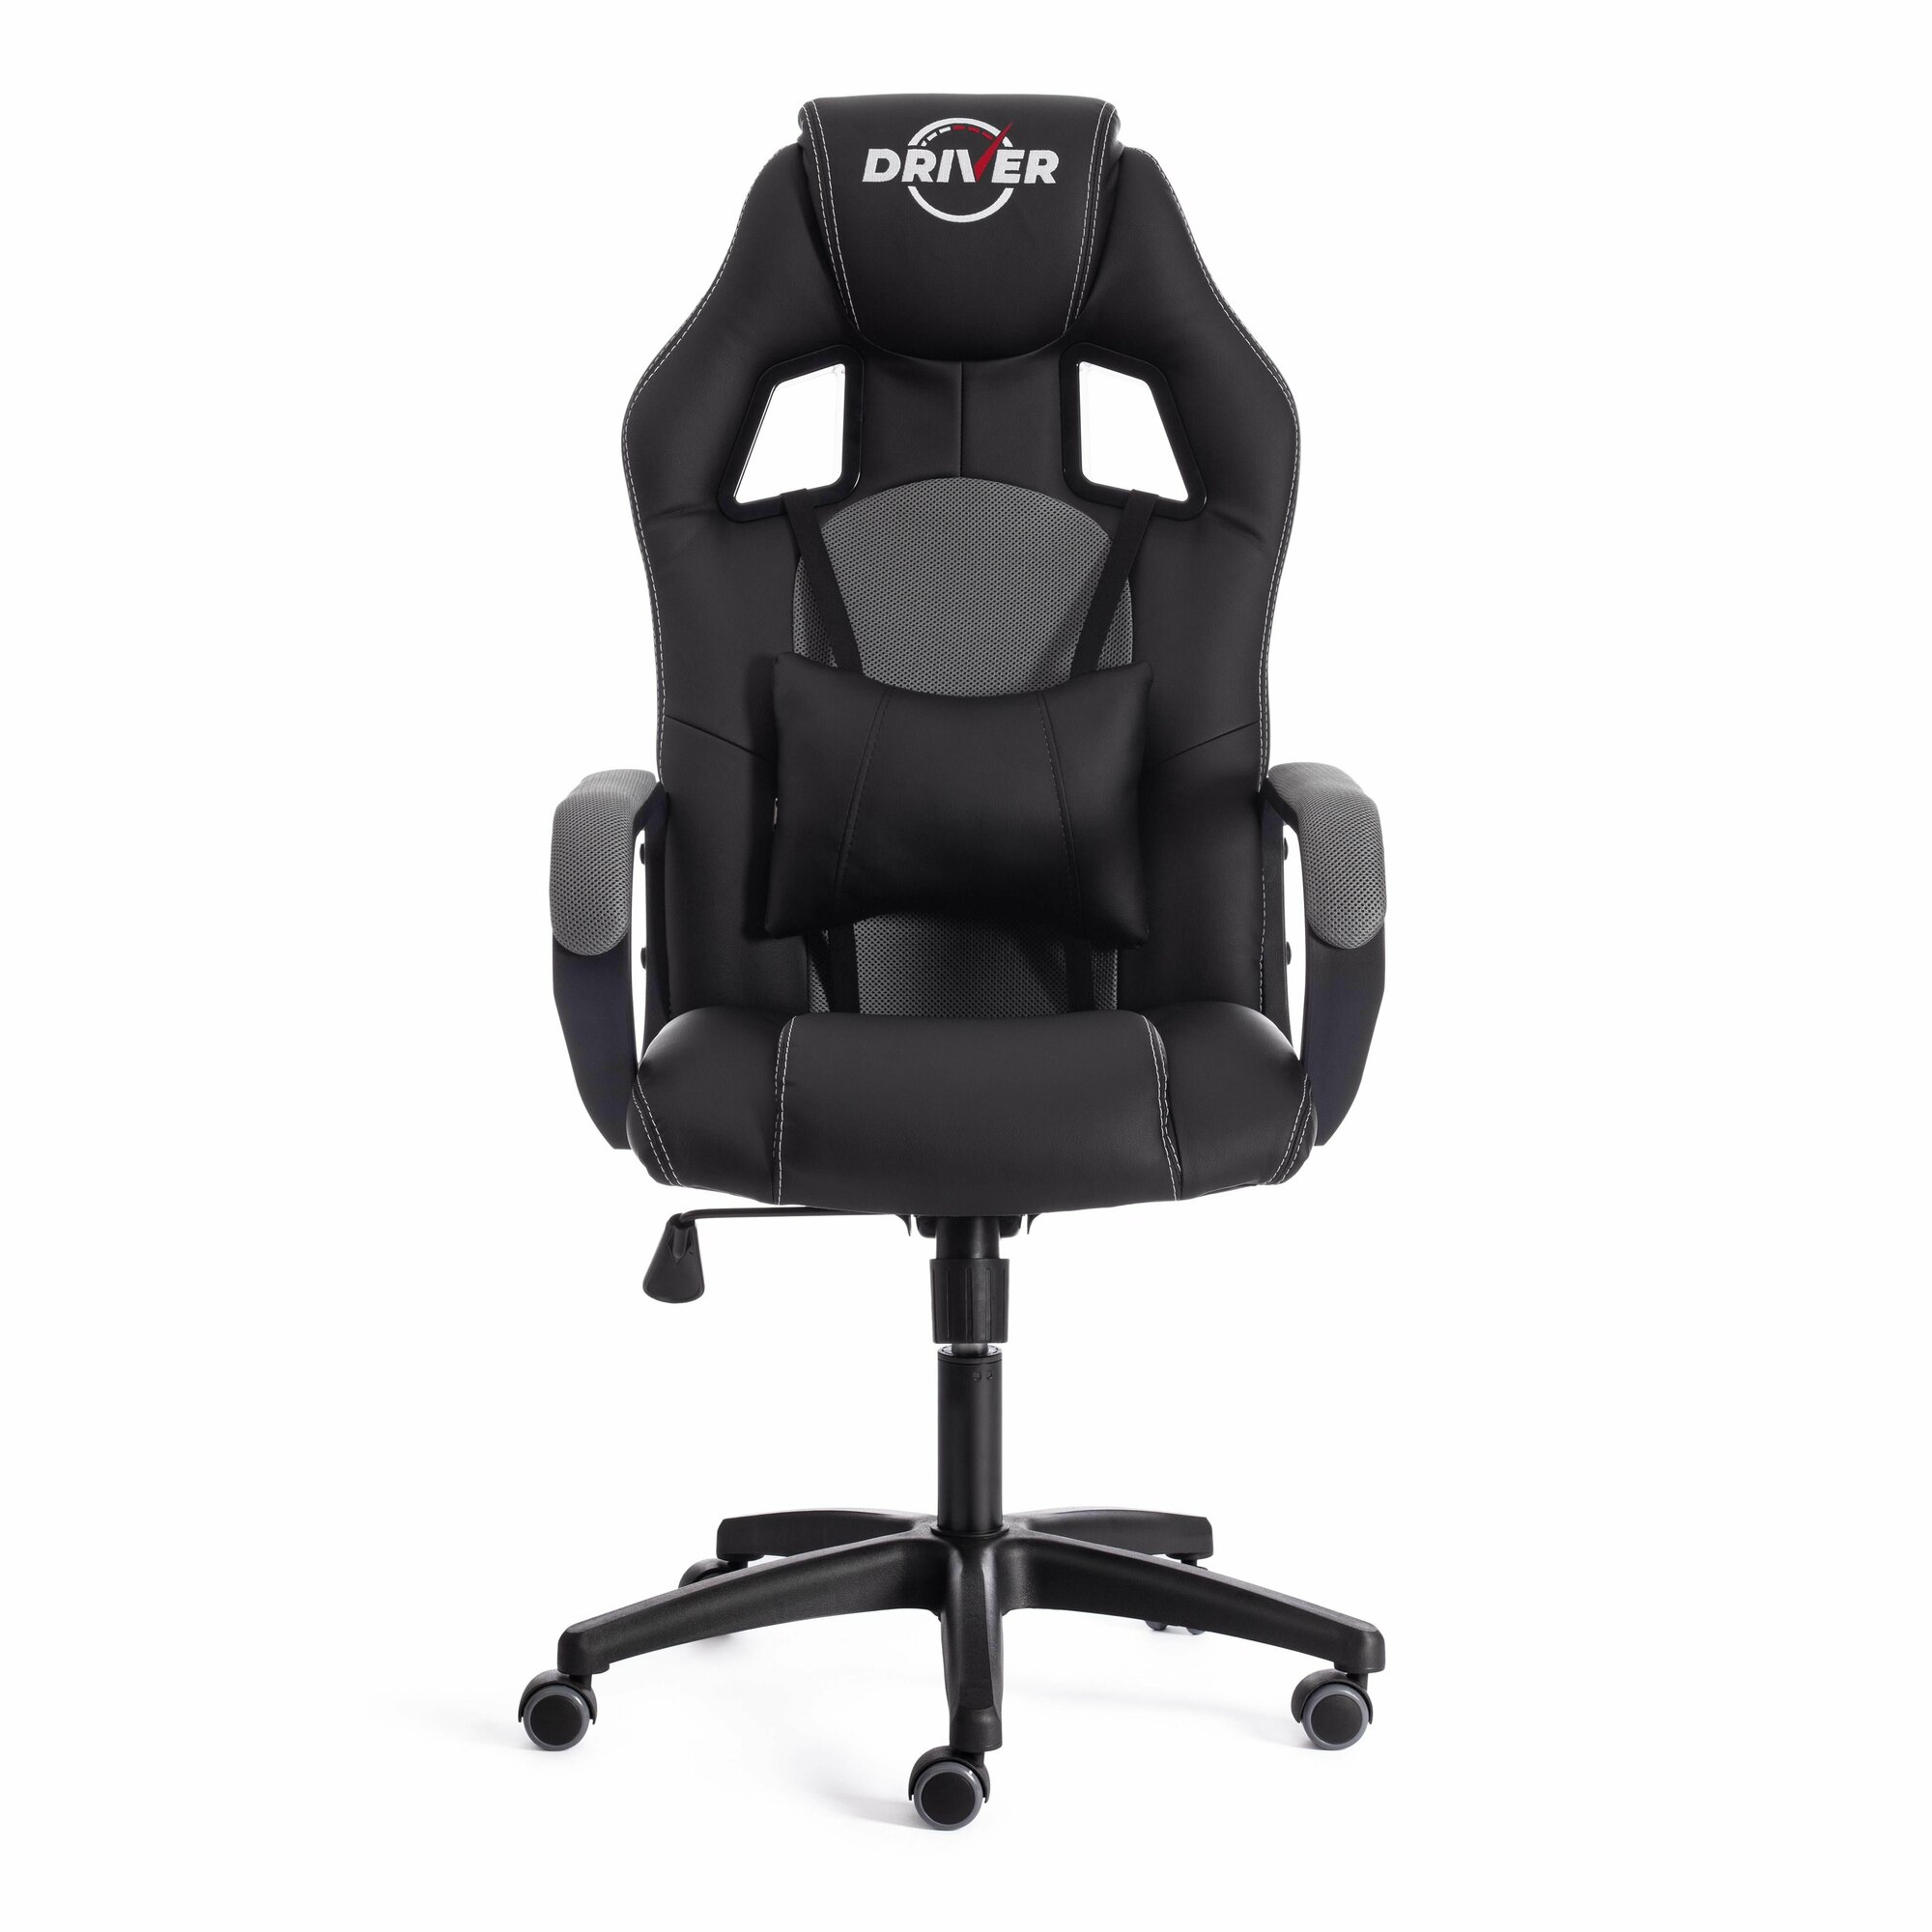 Компьютерное кресло TetChair Driver 22 игровое, обивка: искусственная кожа/текстиль, цвет: черный/серый, 36-6/TW-12 - фотография № 12